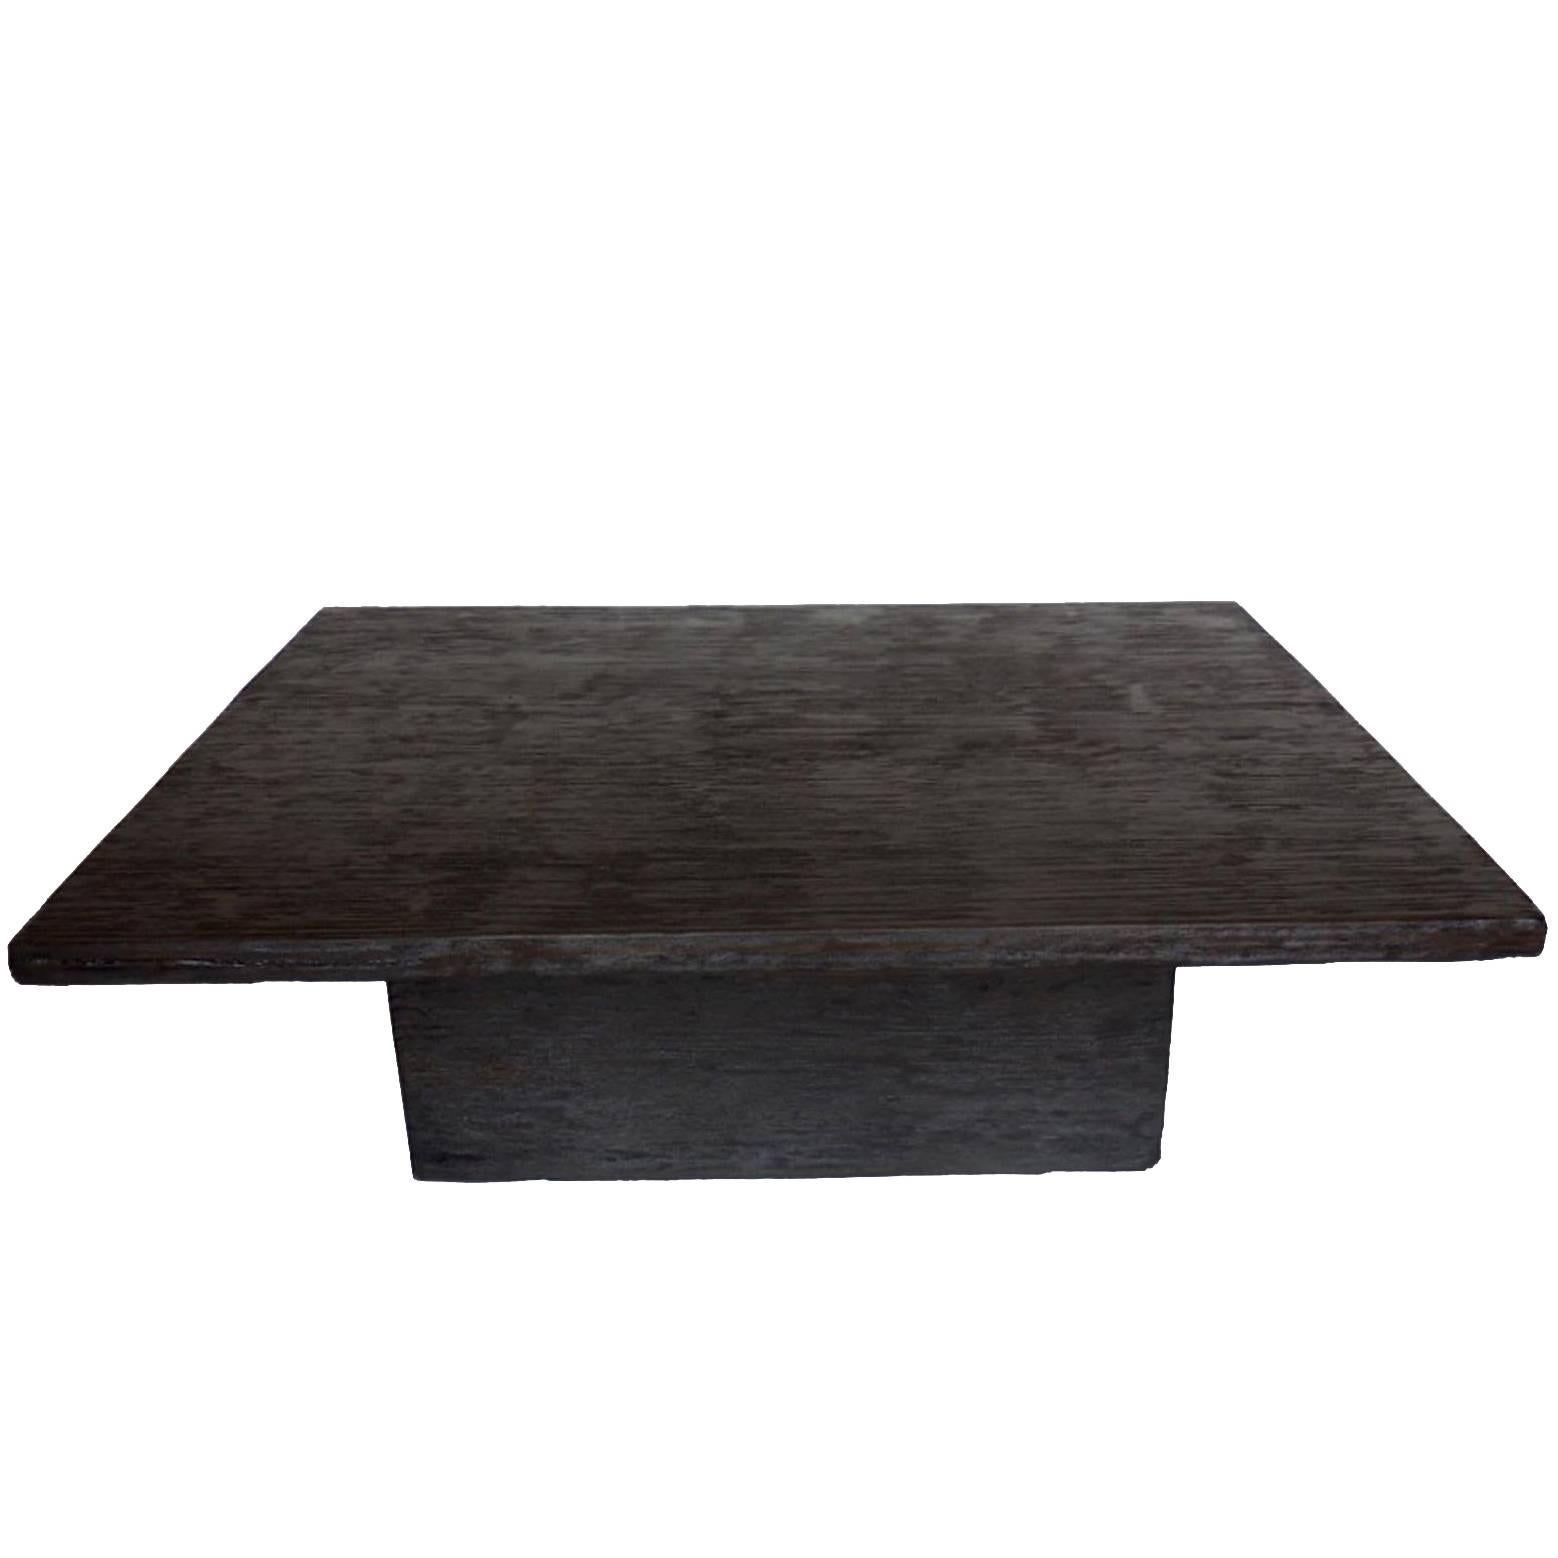 Table basse cubique en bois sur mesure de Dos Gallos en finition Espresso